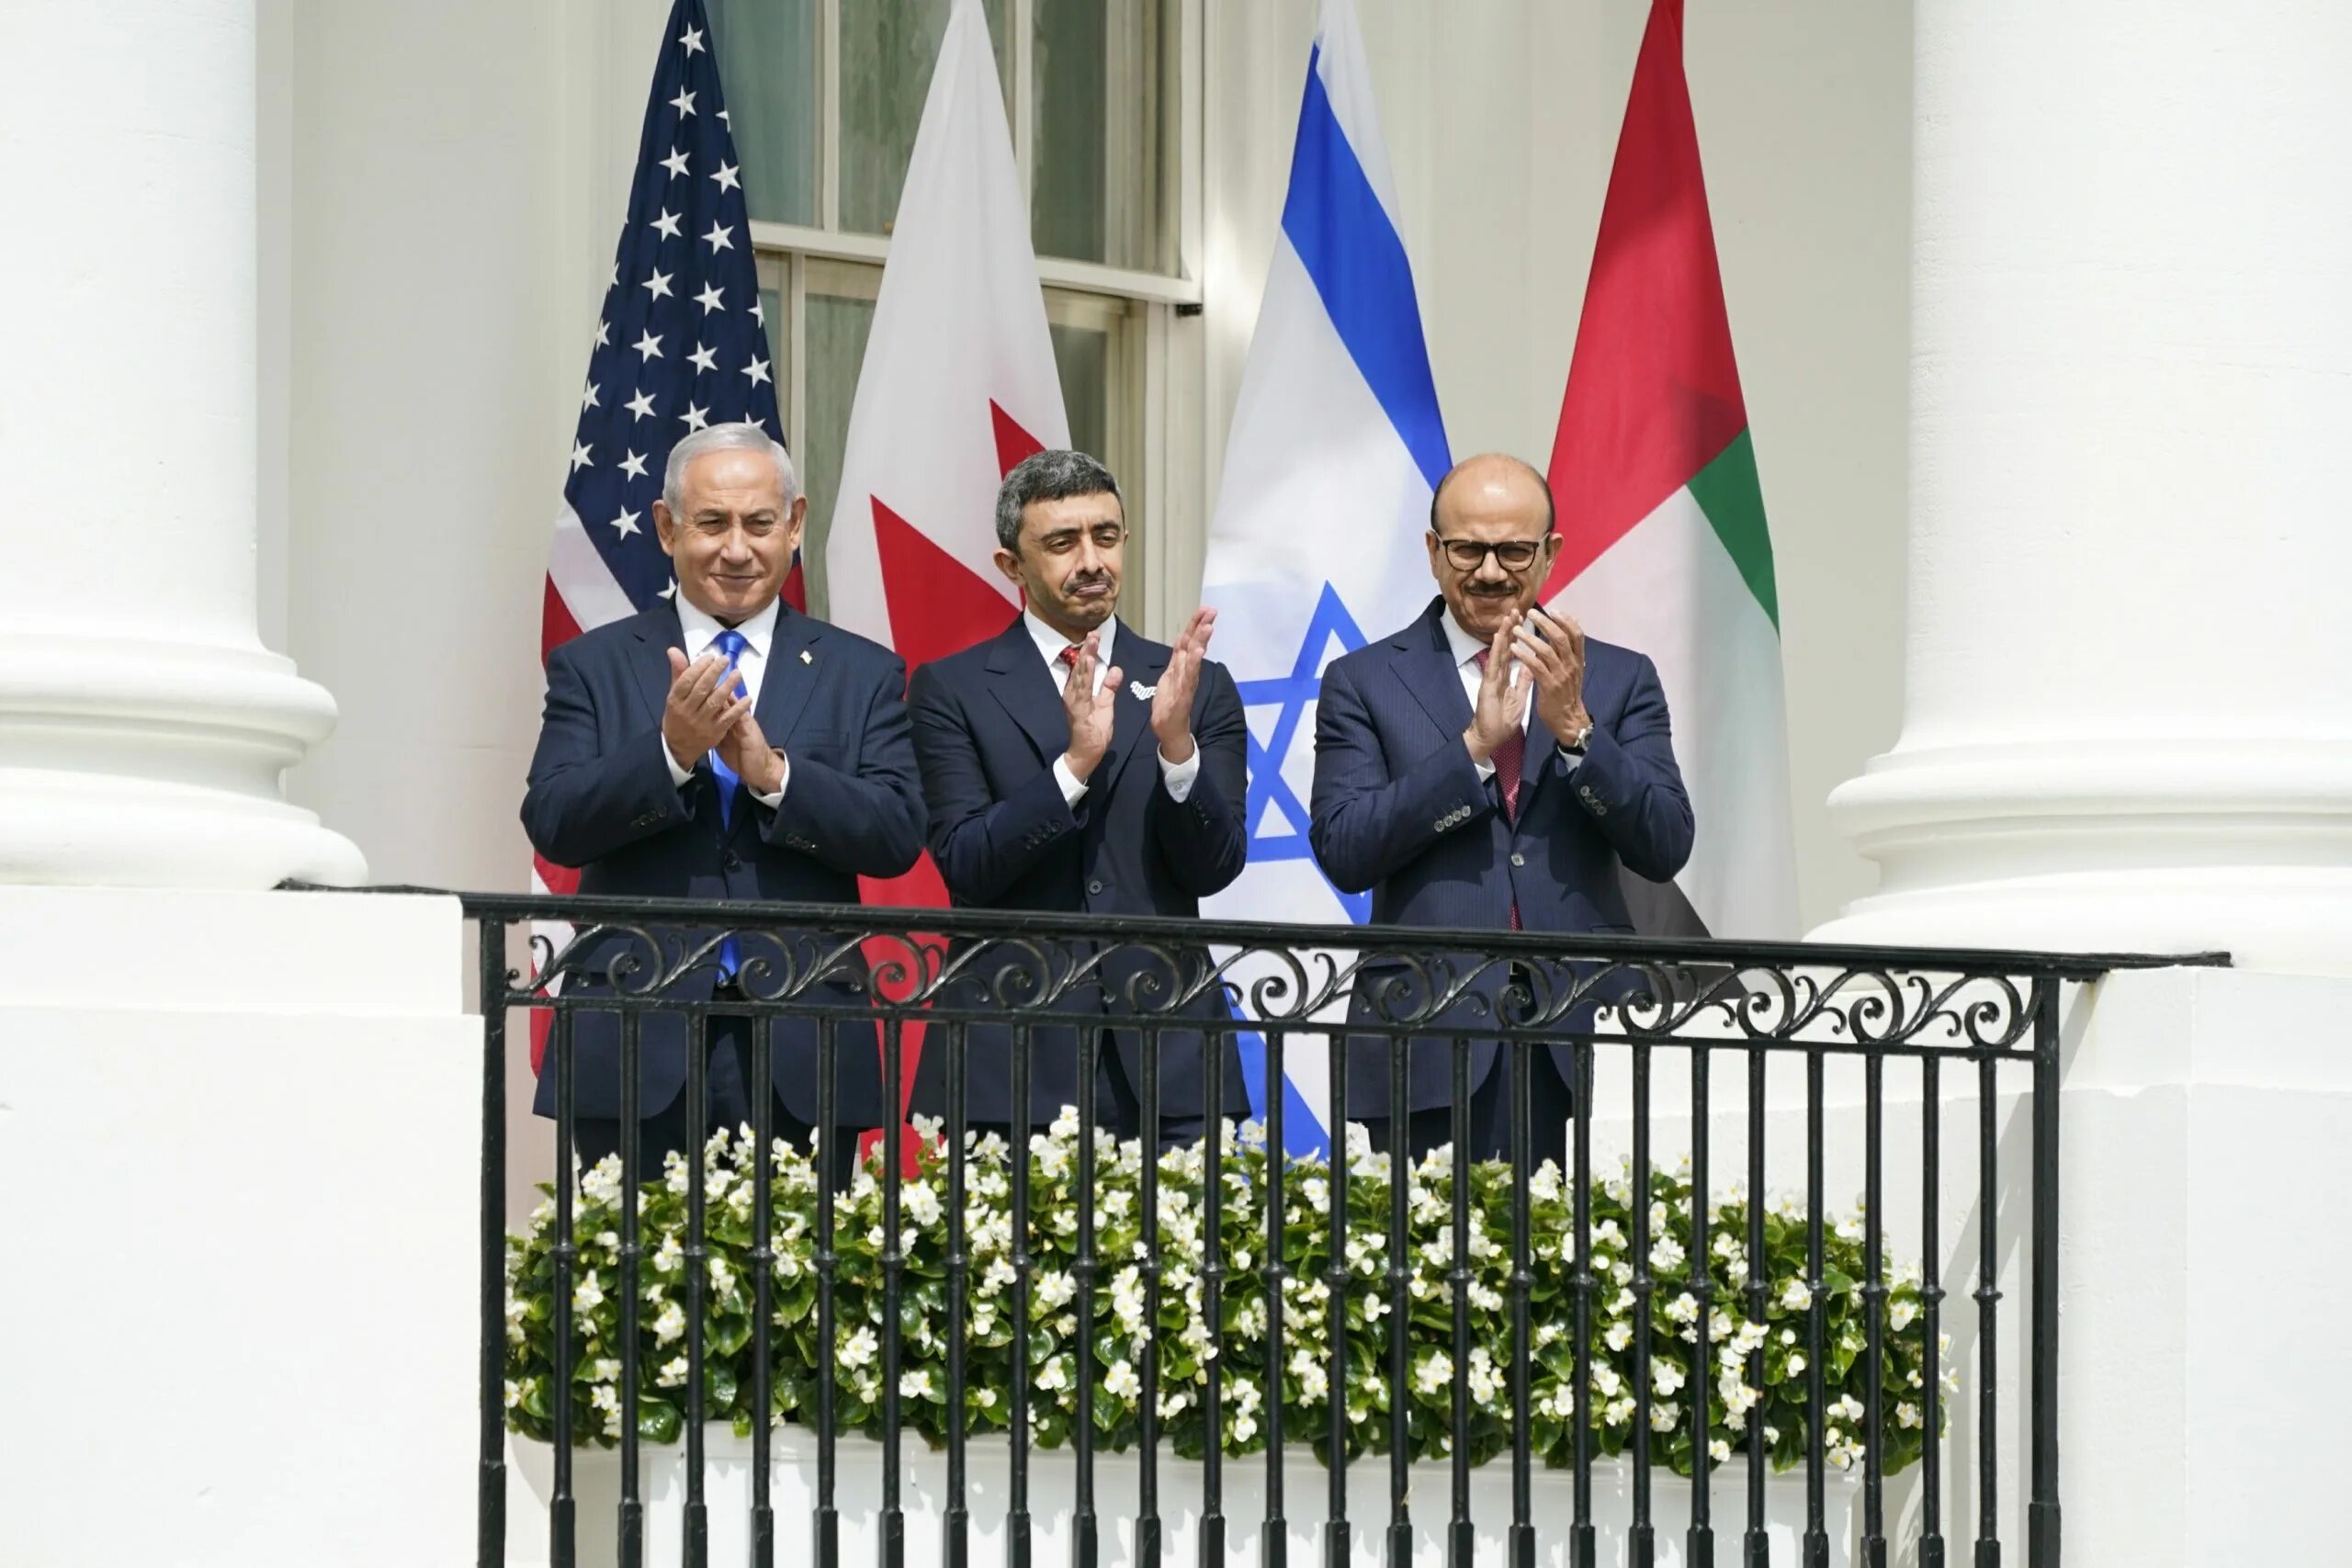 Абдалла 2 и Биньямин Нетаньяху. Переговоры в Израиле. Переговоры с арабами. Иран ответит израилю